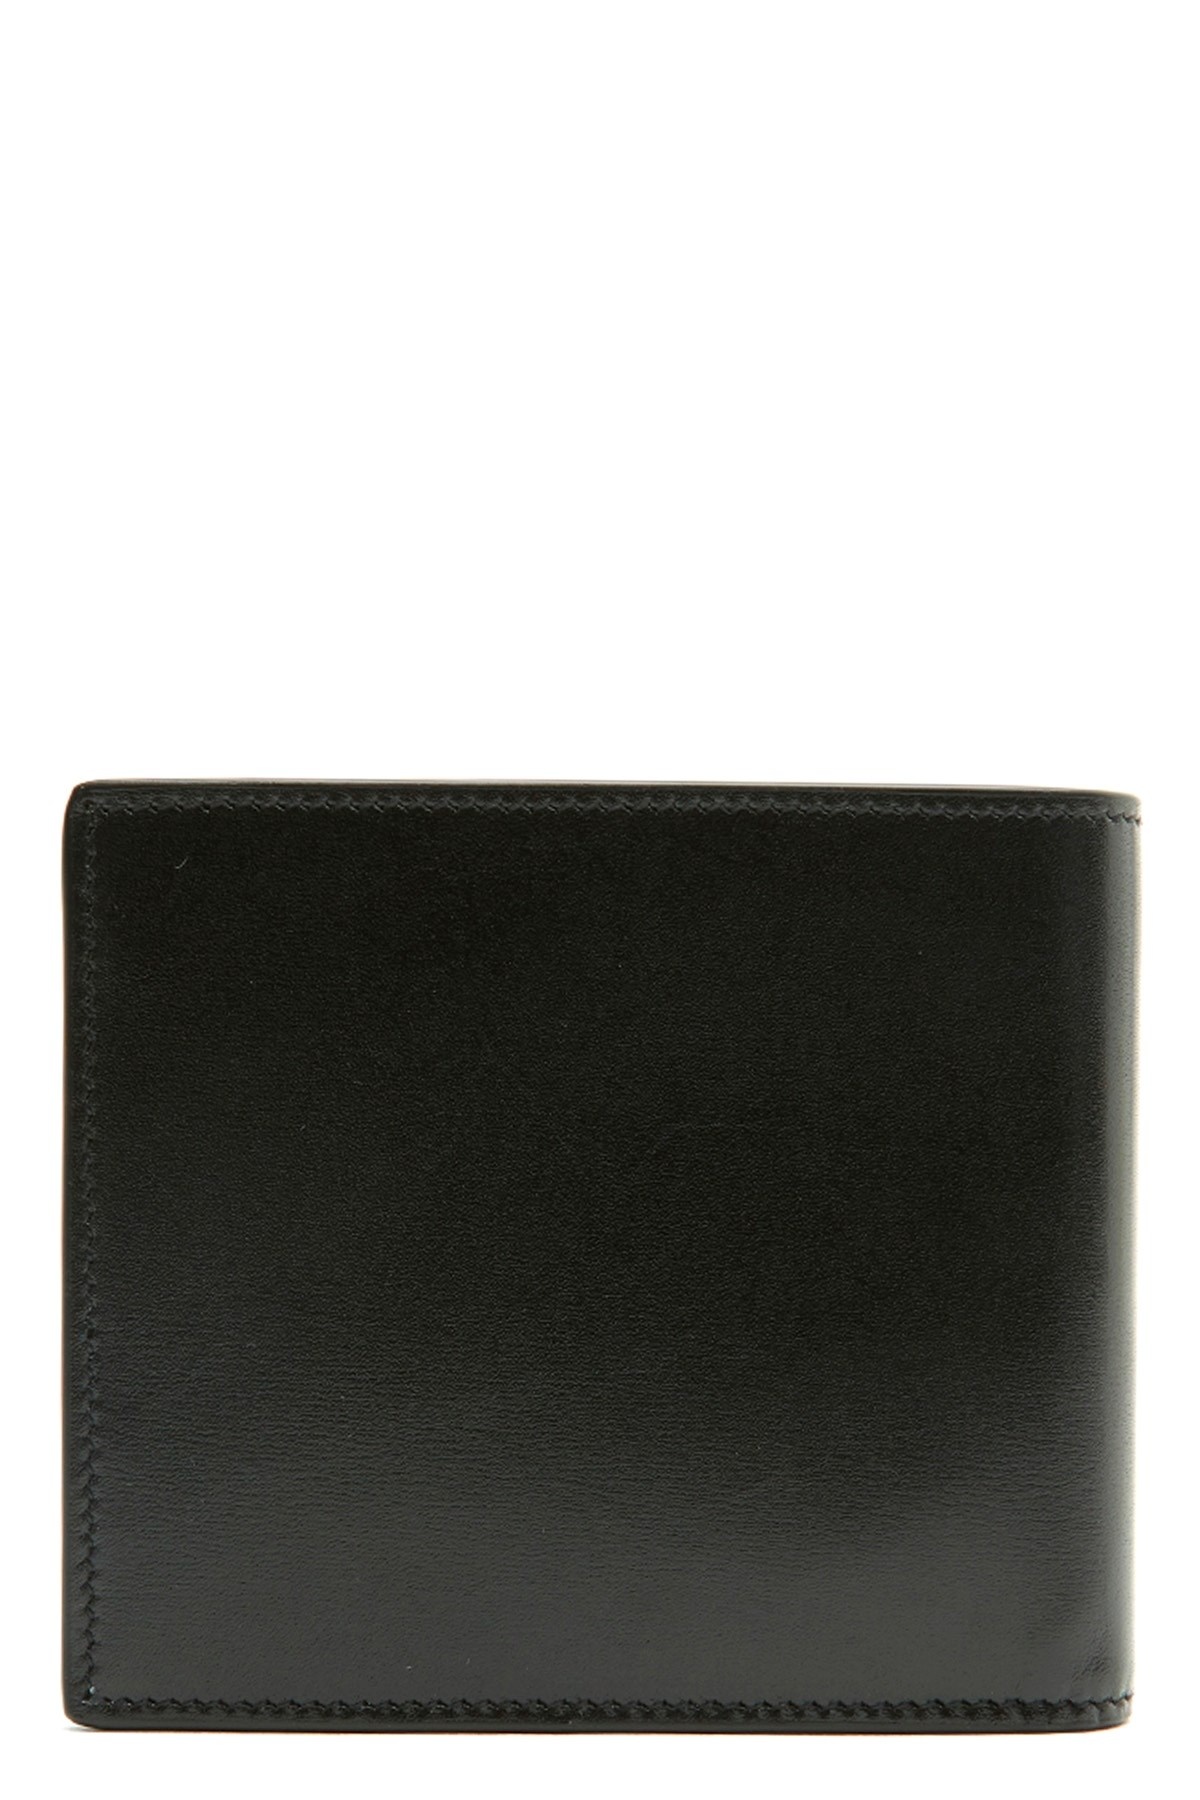 Logo wallet - 2